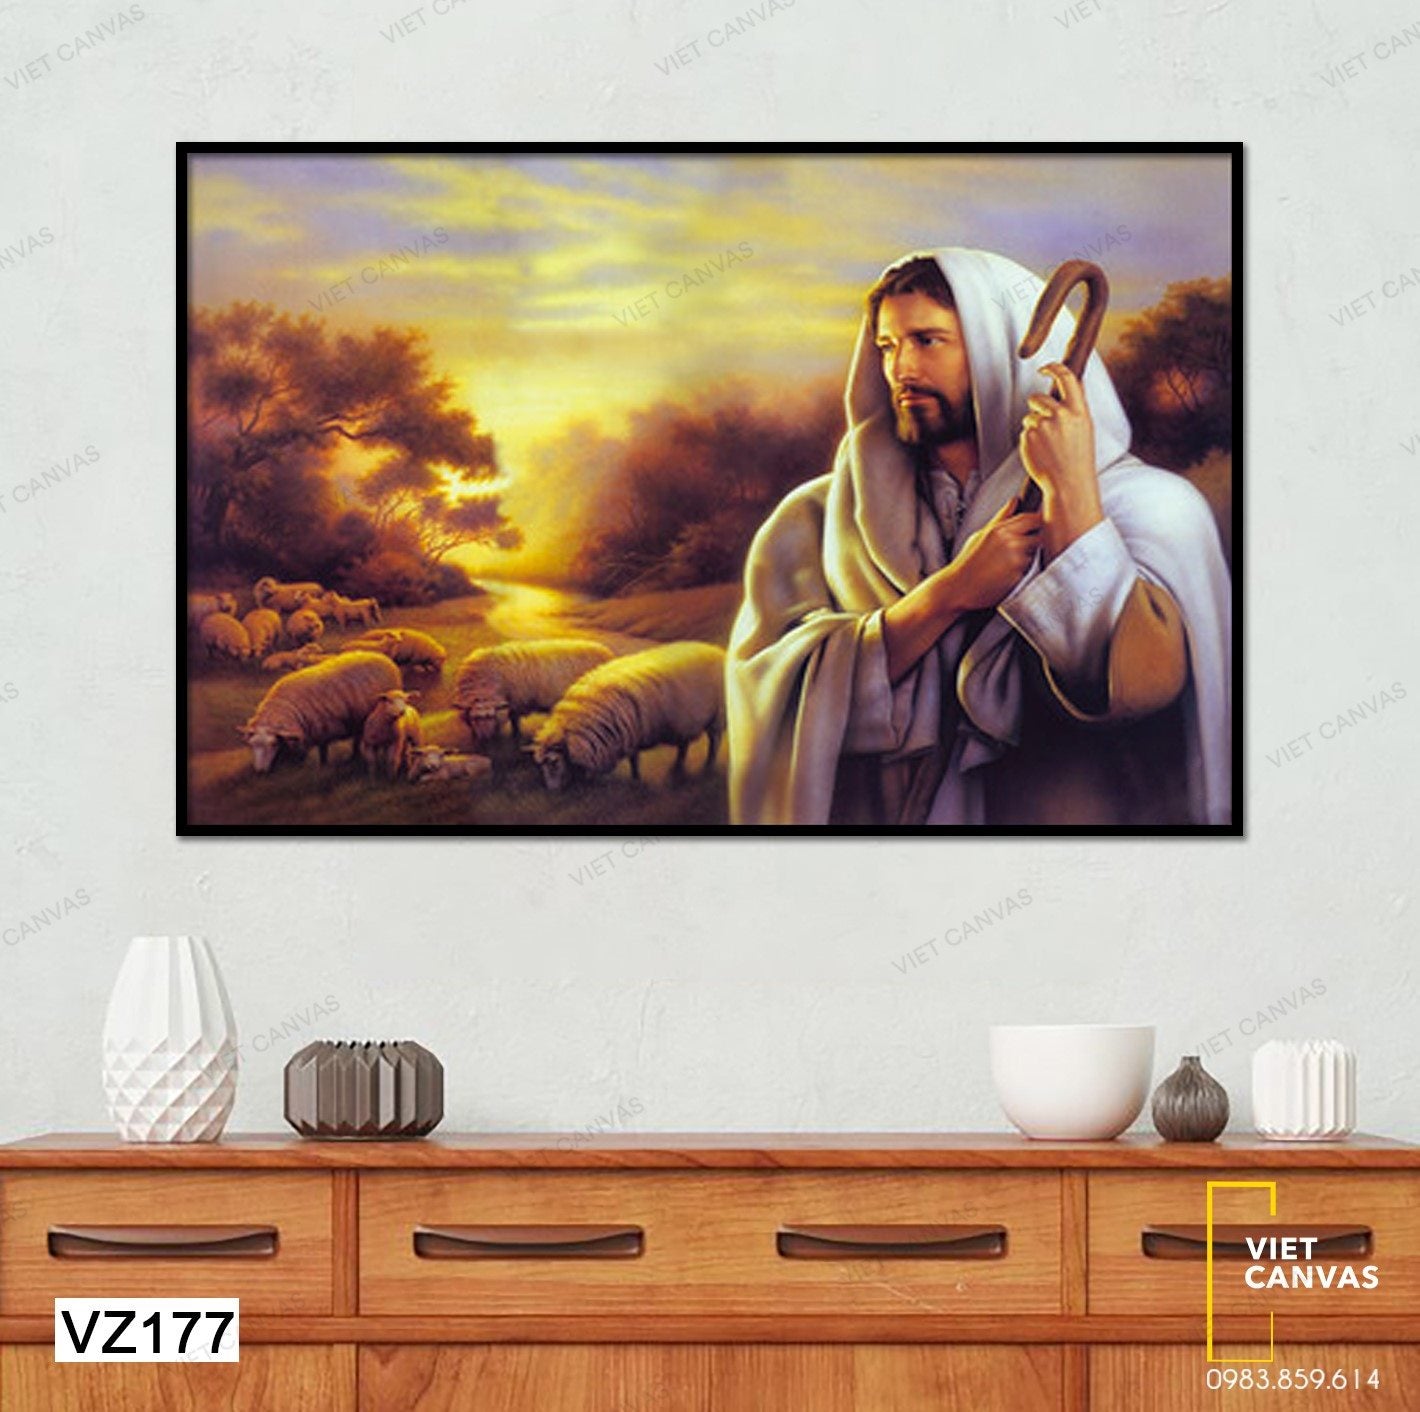 Tranh Chúa Chiên Lành - VZ177